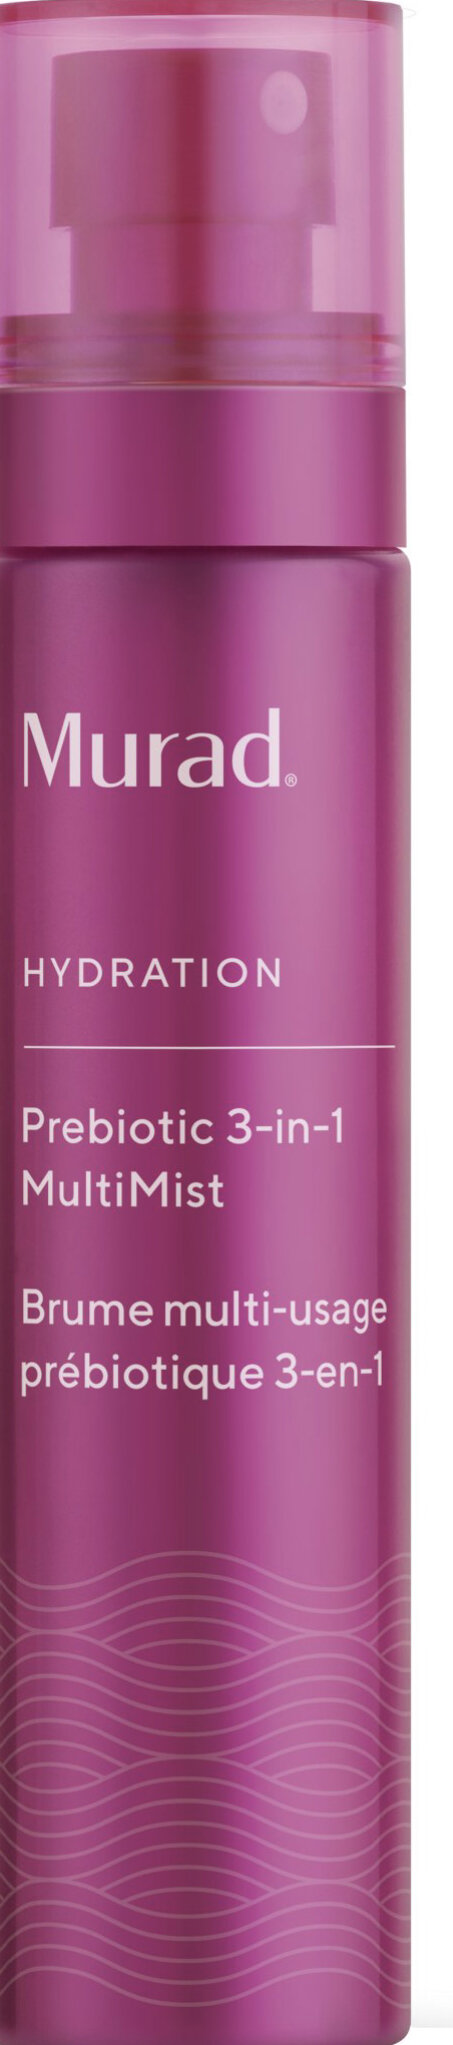 Murad Hydration Prebiotic 3-in-1